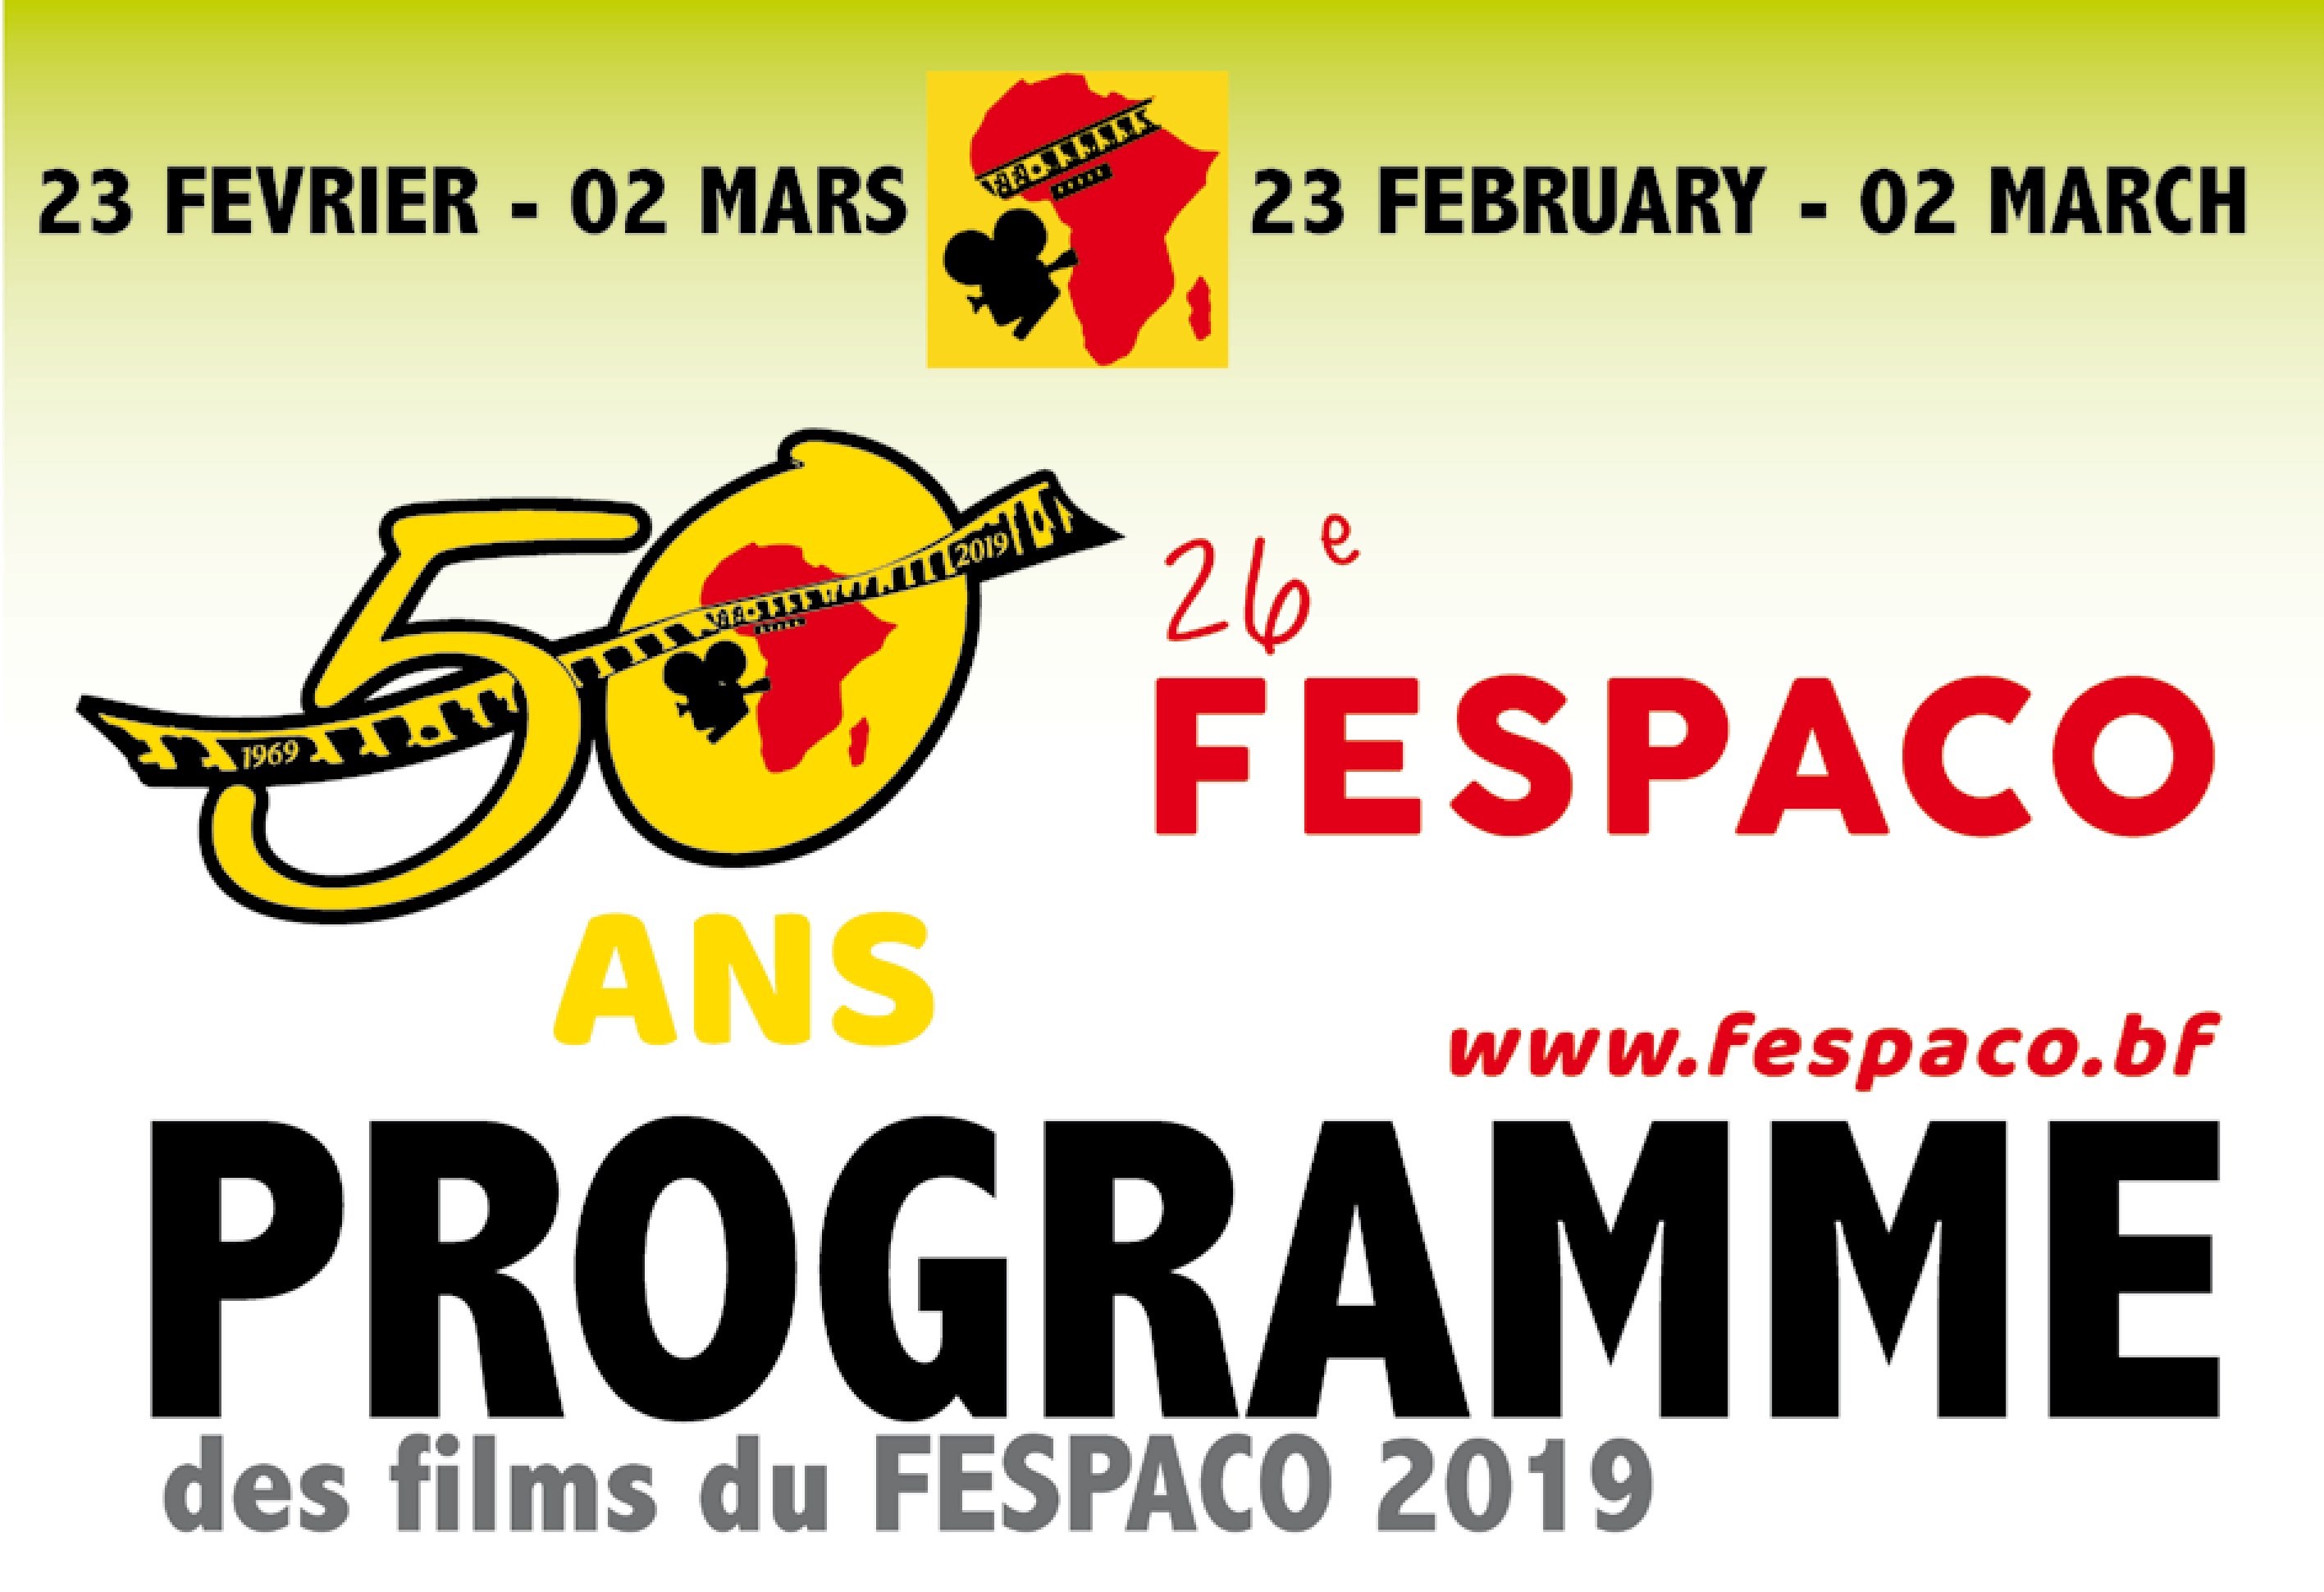 Fespaco 2019 : Programme de projection des films du jeudi 28 février 2019